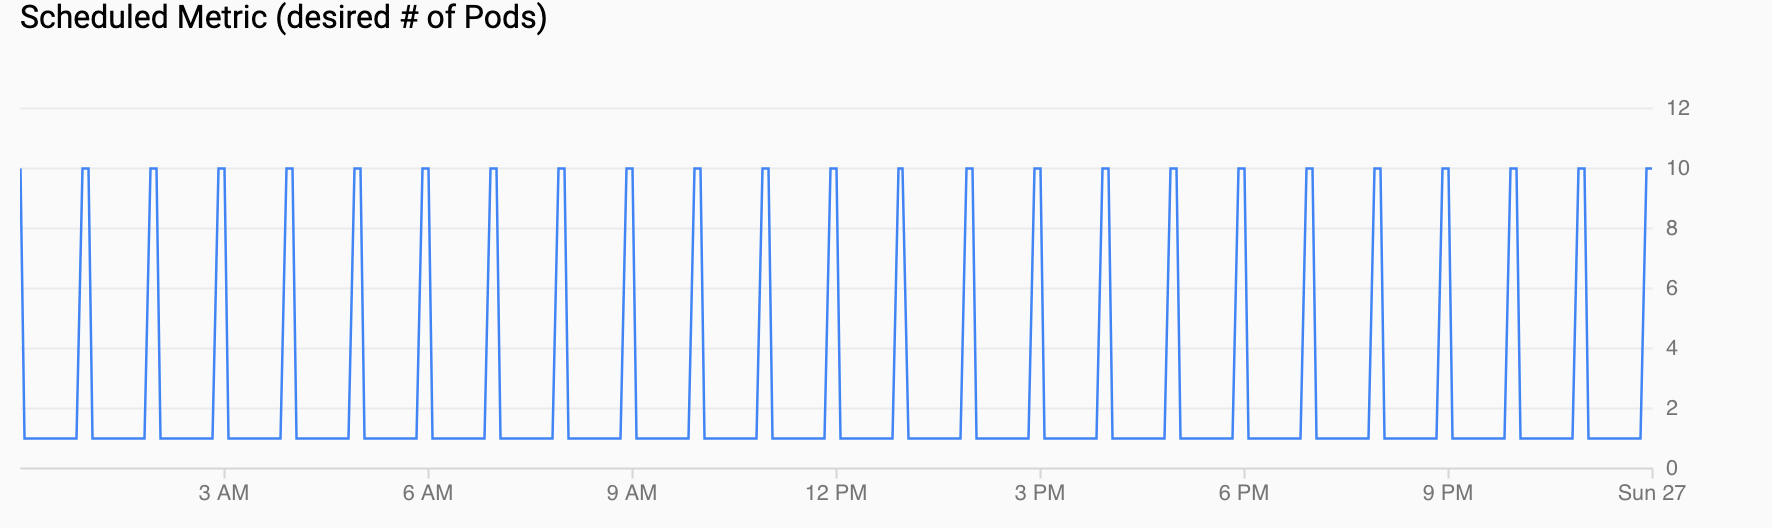 Grafik der Nachfrage für Pods mit einer Spitzenlast pro Stunde.